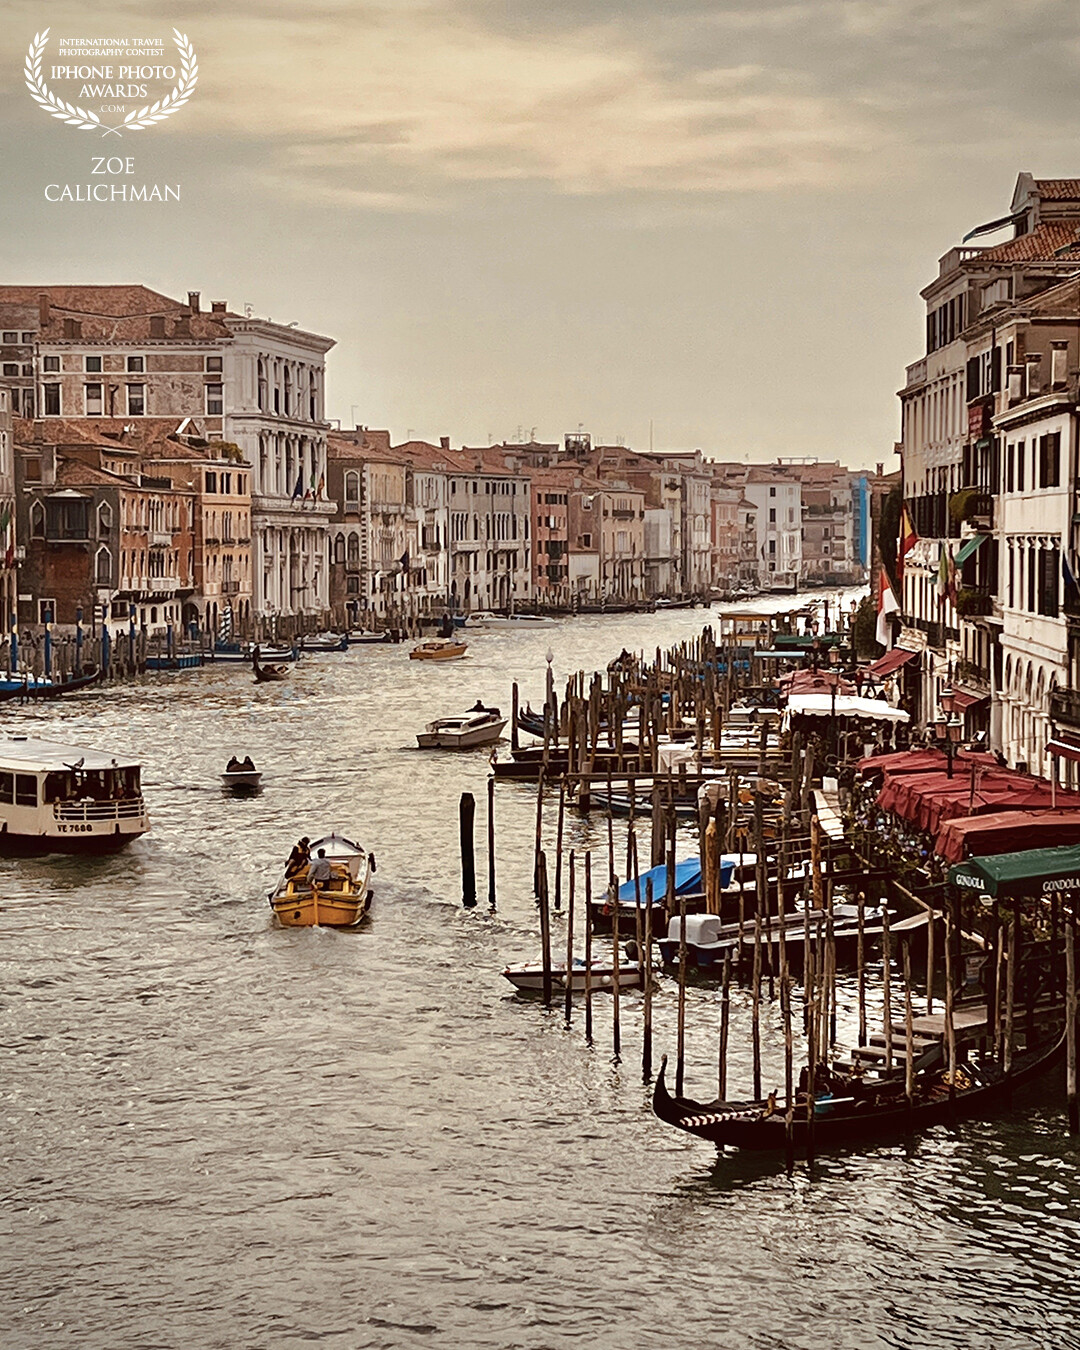 Scene in  Venice.